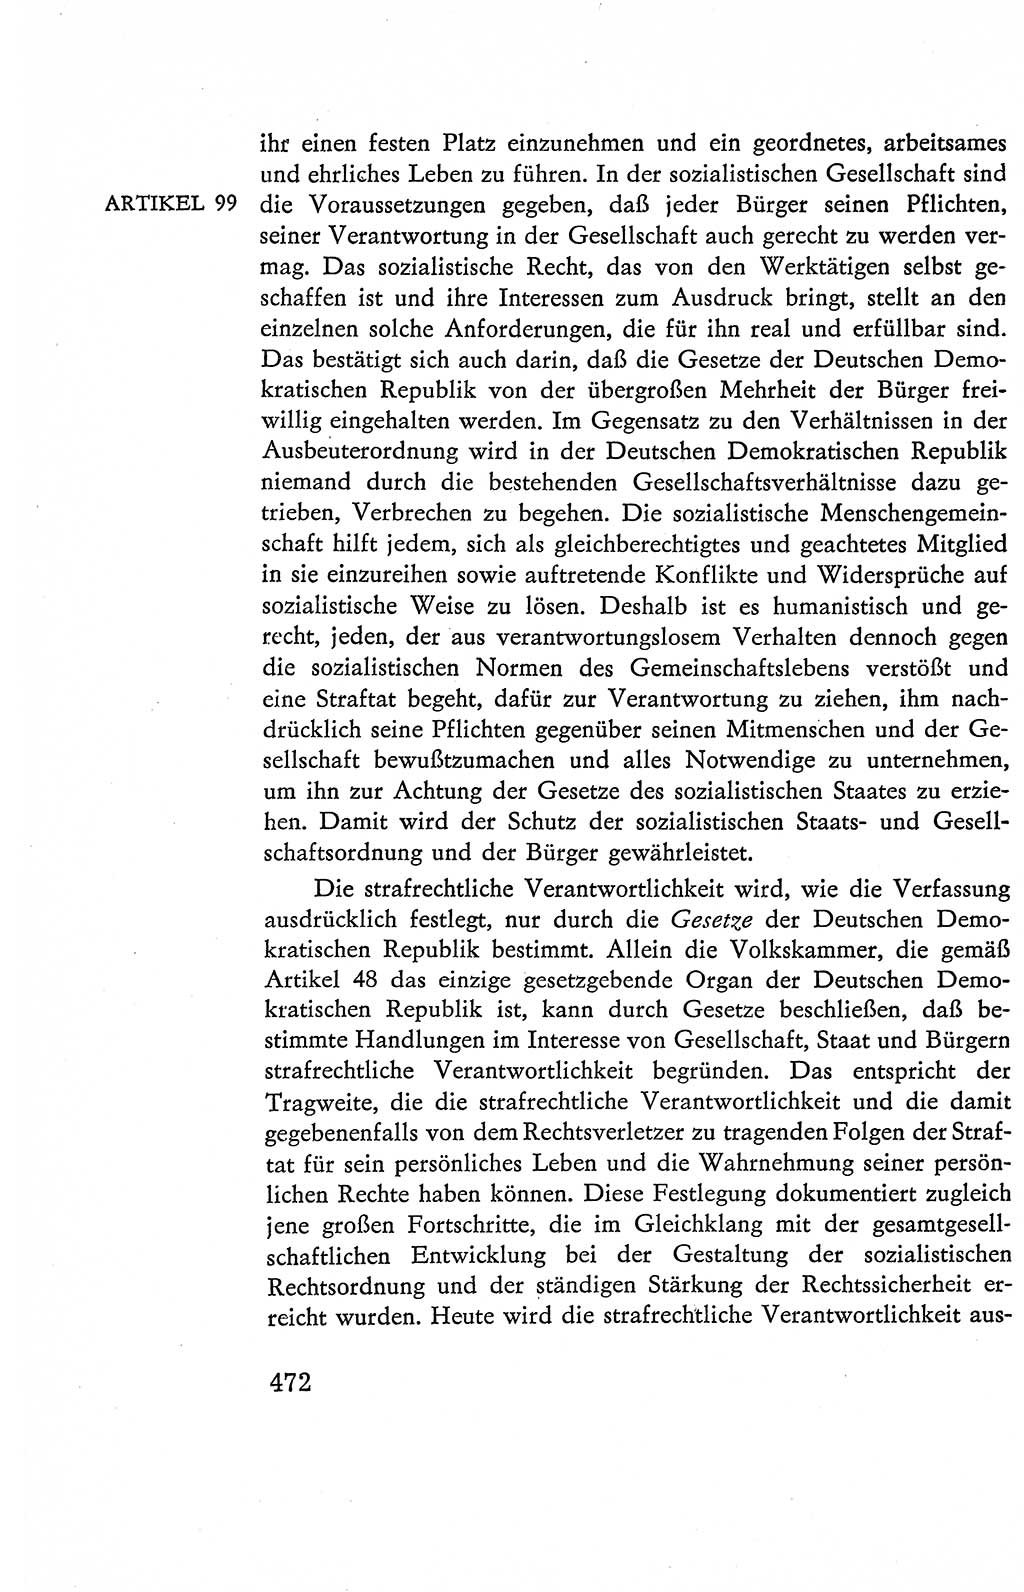 Verfassung der Deutschen Demokratischen Republik (DDR), Dokumente, Kommentar 1969, Band 2, Seite 472 (Verf. DDR Dok. Komm. 1969, Bd. 2, S. 472)